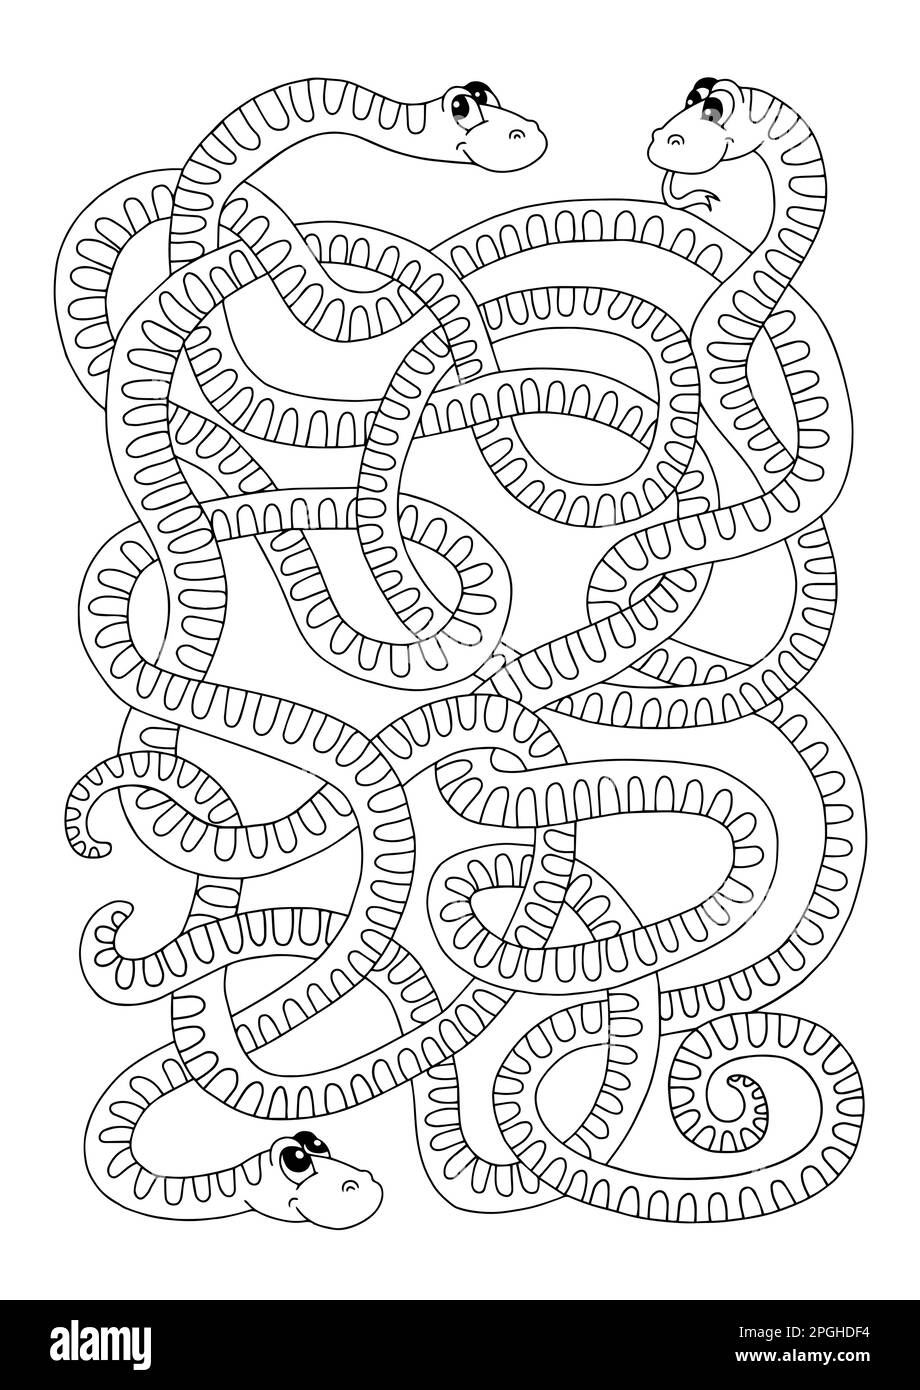 Jeu de labyrinthe pour les enfants, serpents entremêlés amusants Illustration de Vecteur